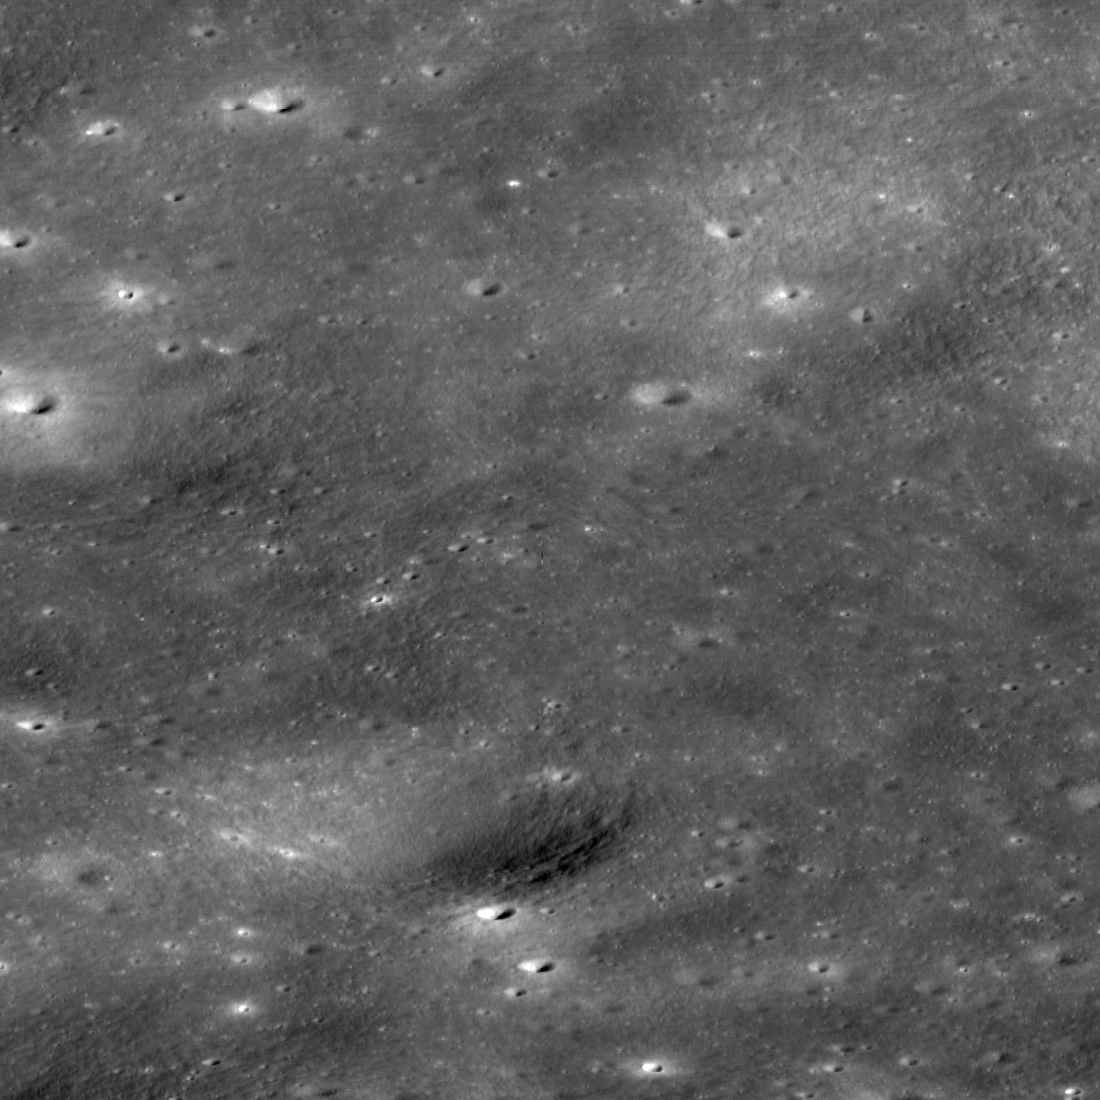 Sonda Danuri vista por LRO